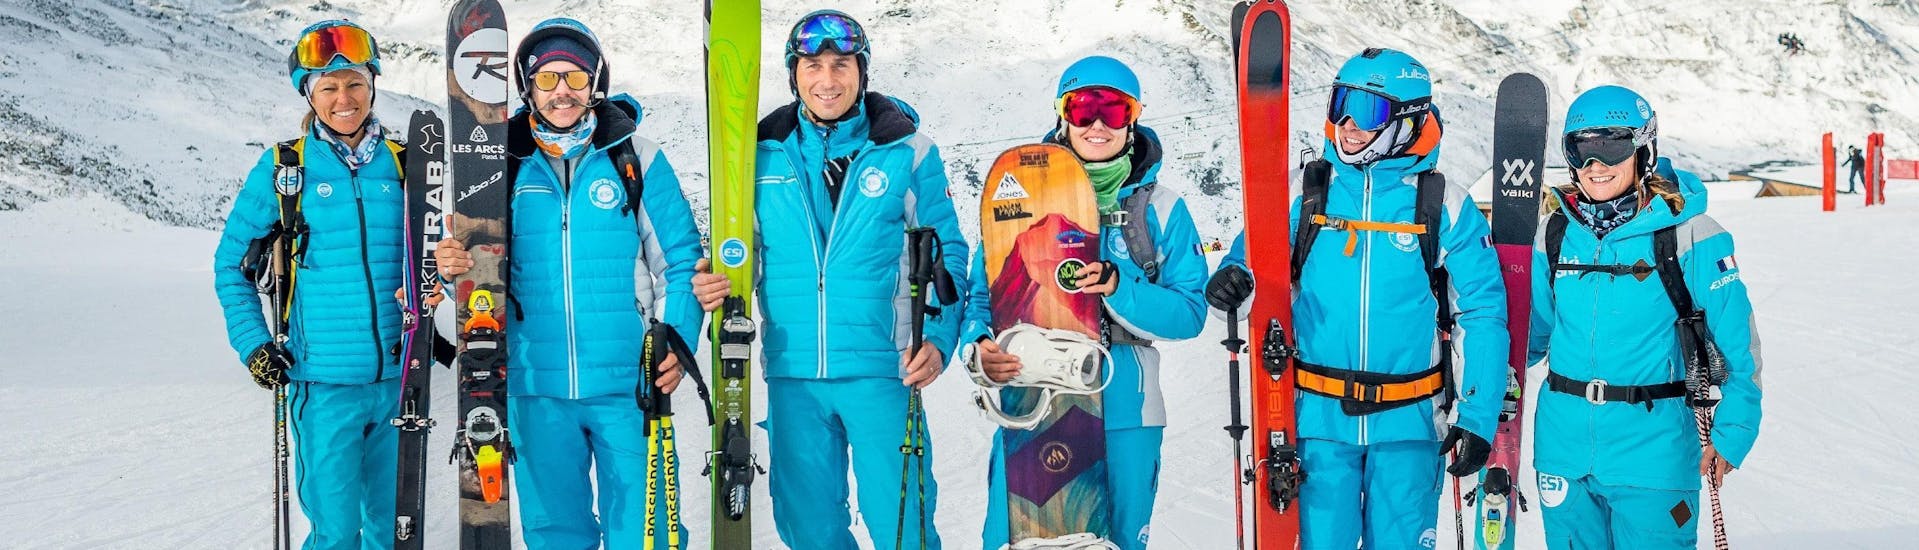 Instructeurs van ESI Alpe d'Huez - Europese skischool maken zich klaar om de deelnemers van de snowboardlessen (vanaf 8 jaar) voor beginners te verwelkomen.